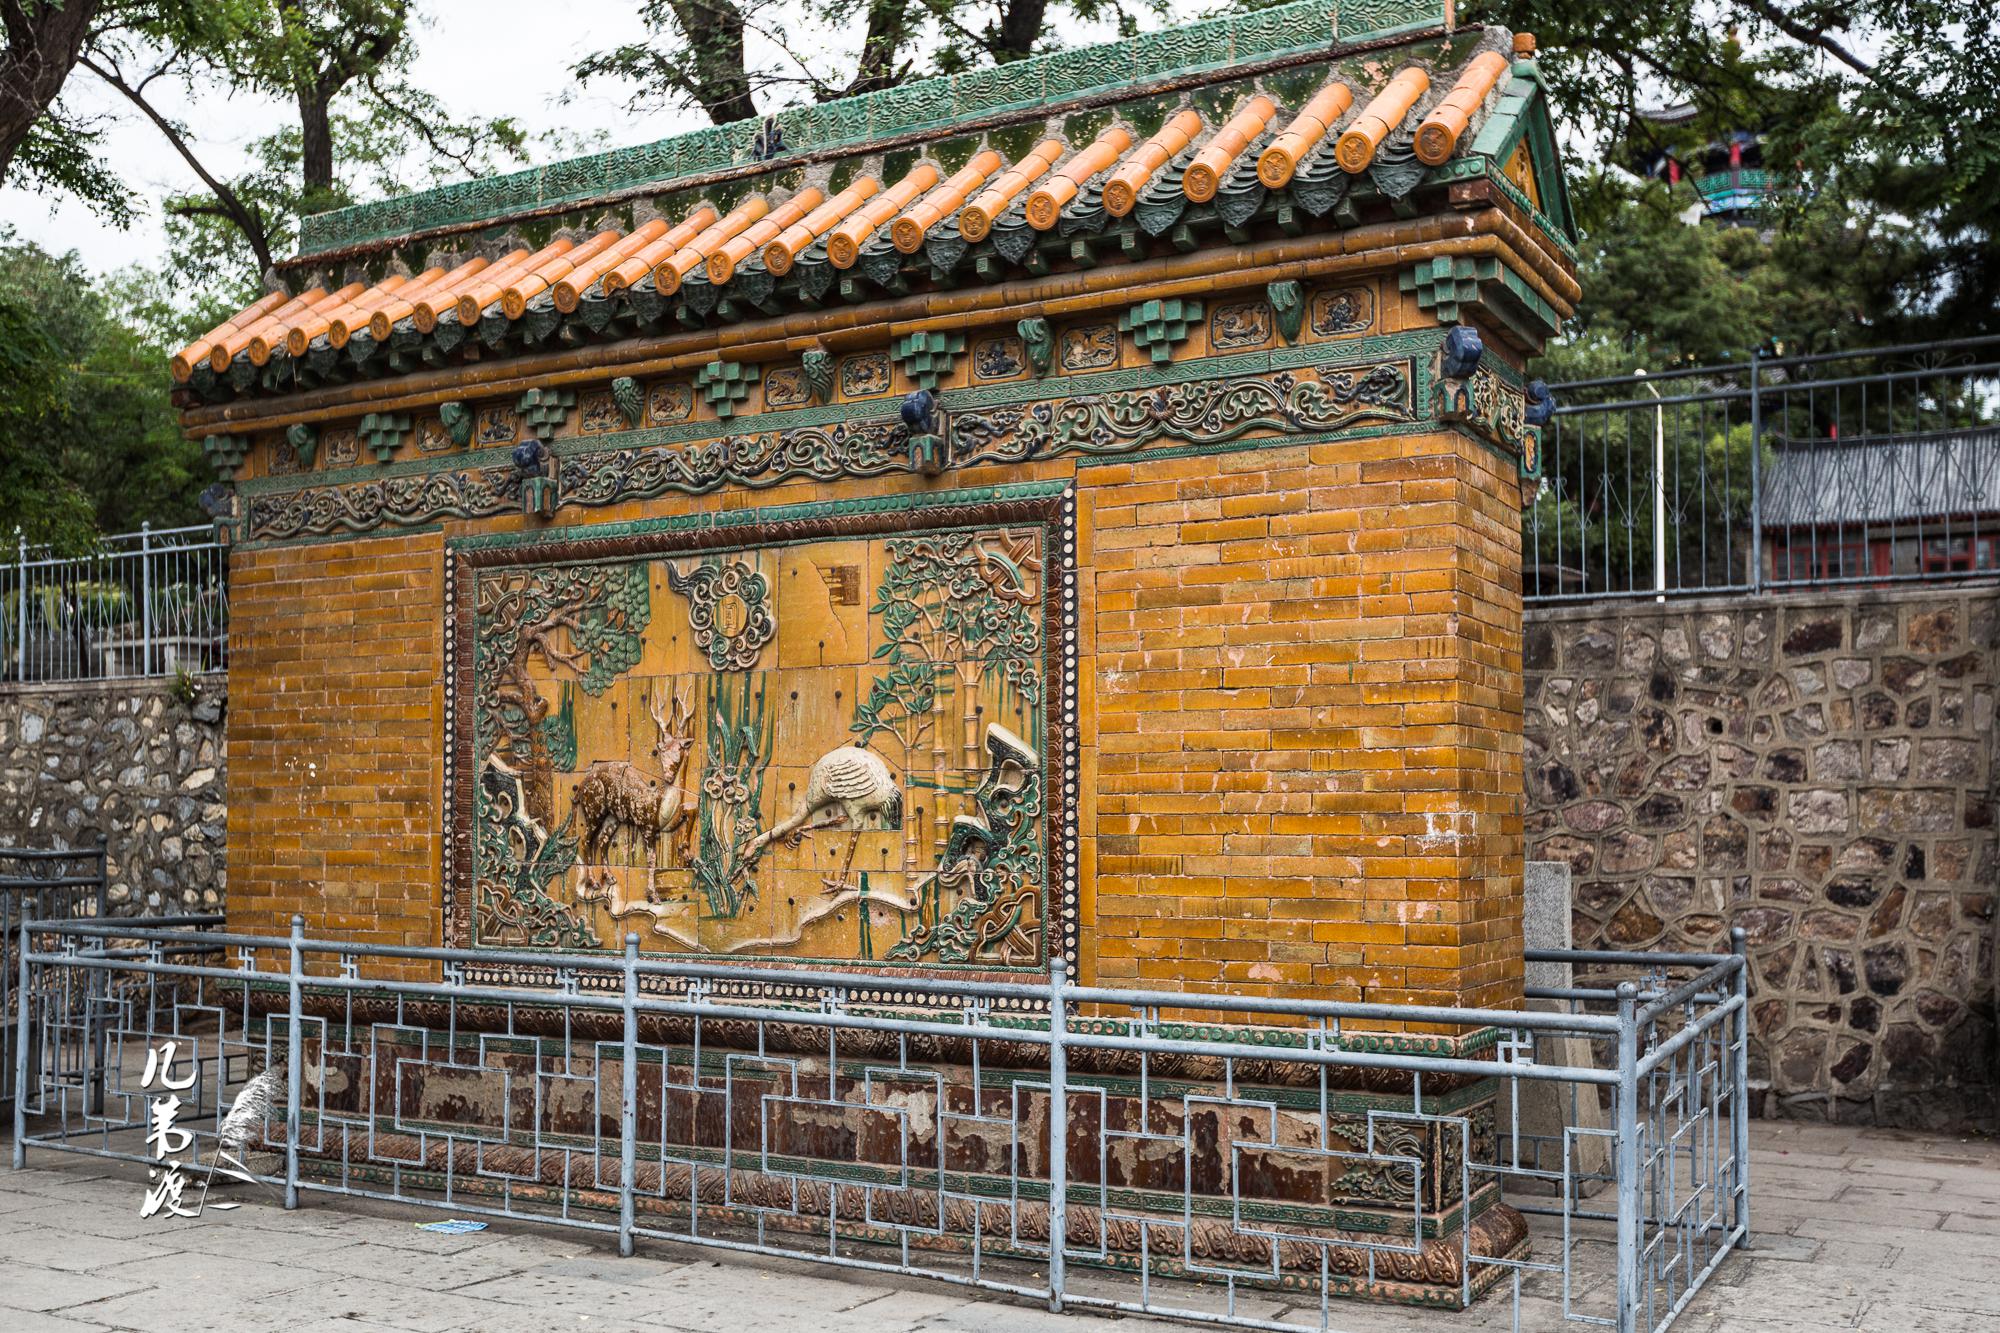 辽宁海城·厝石山公园(也叫海城公园) 南门有一座清代琉璃影壁